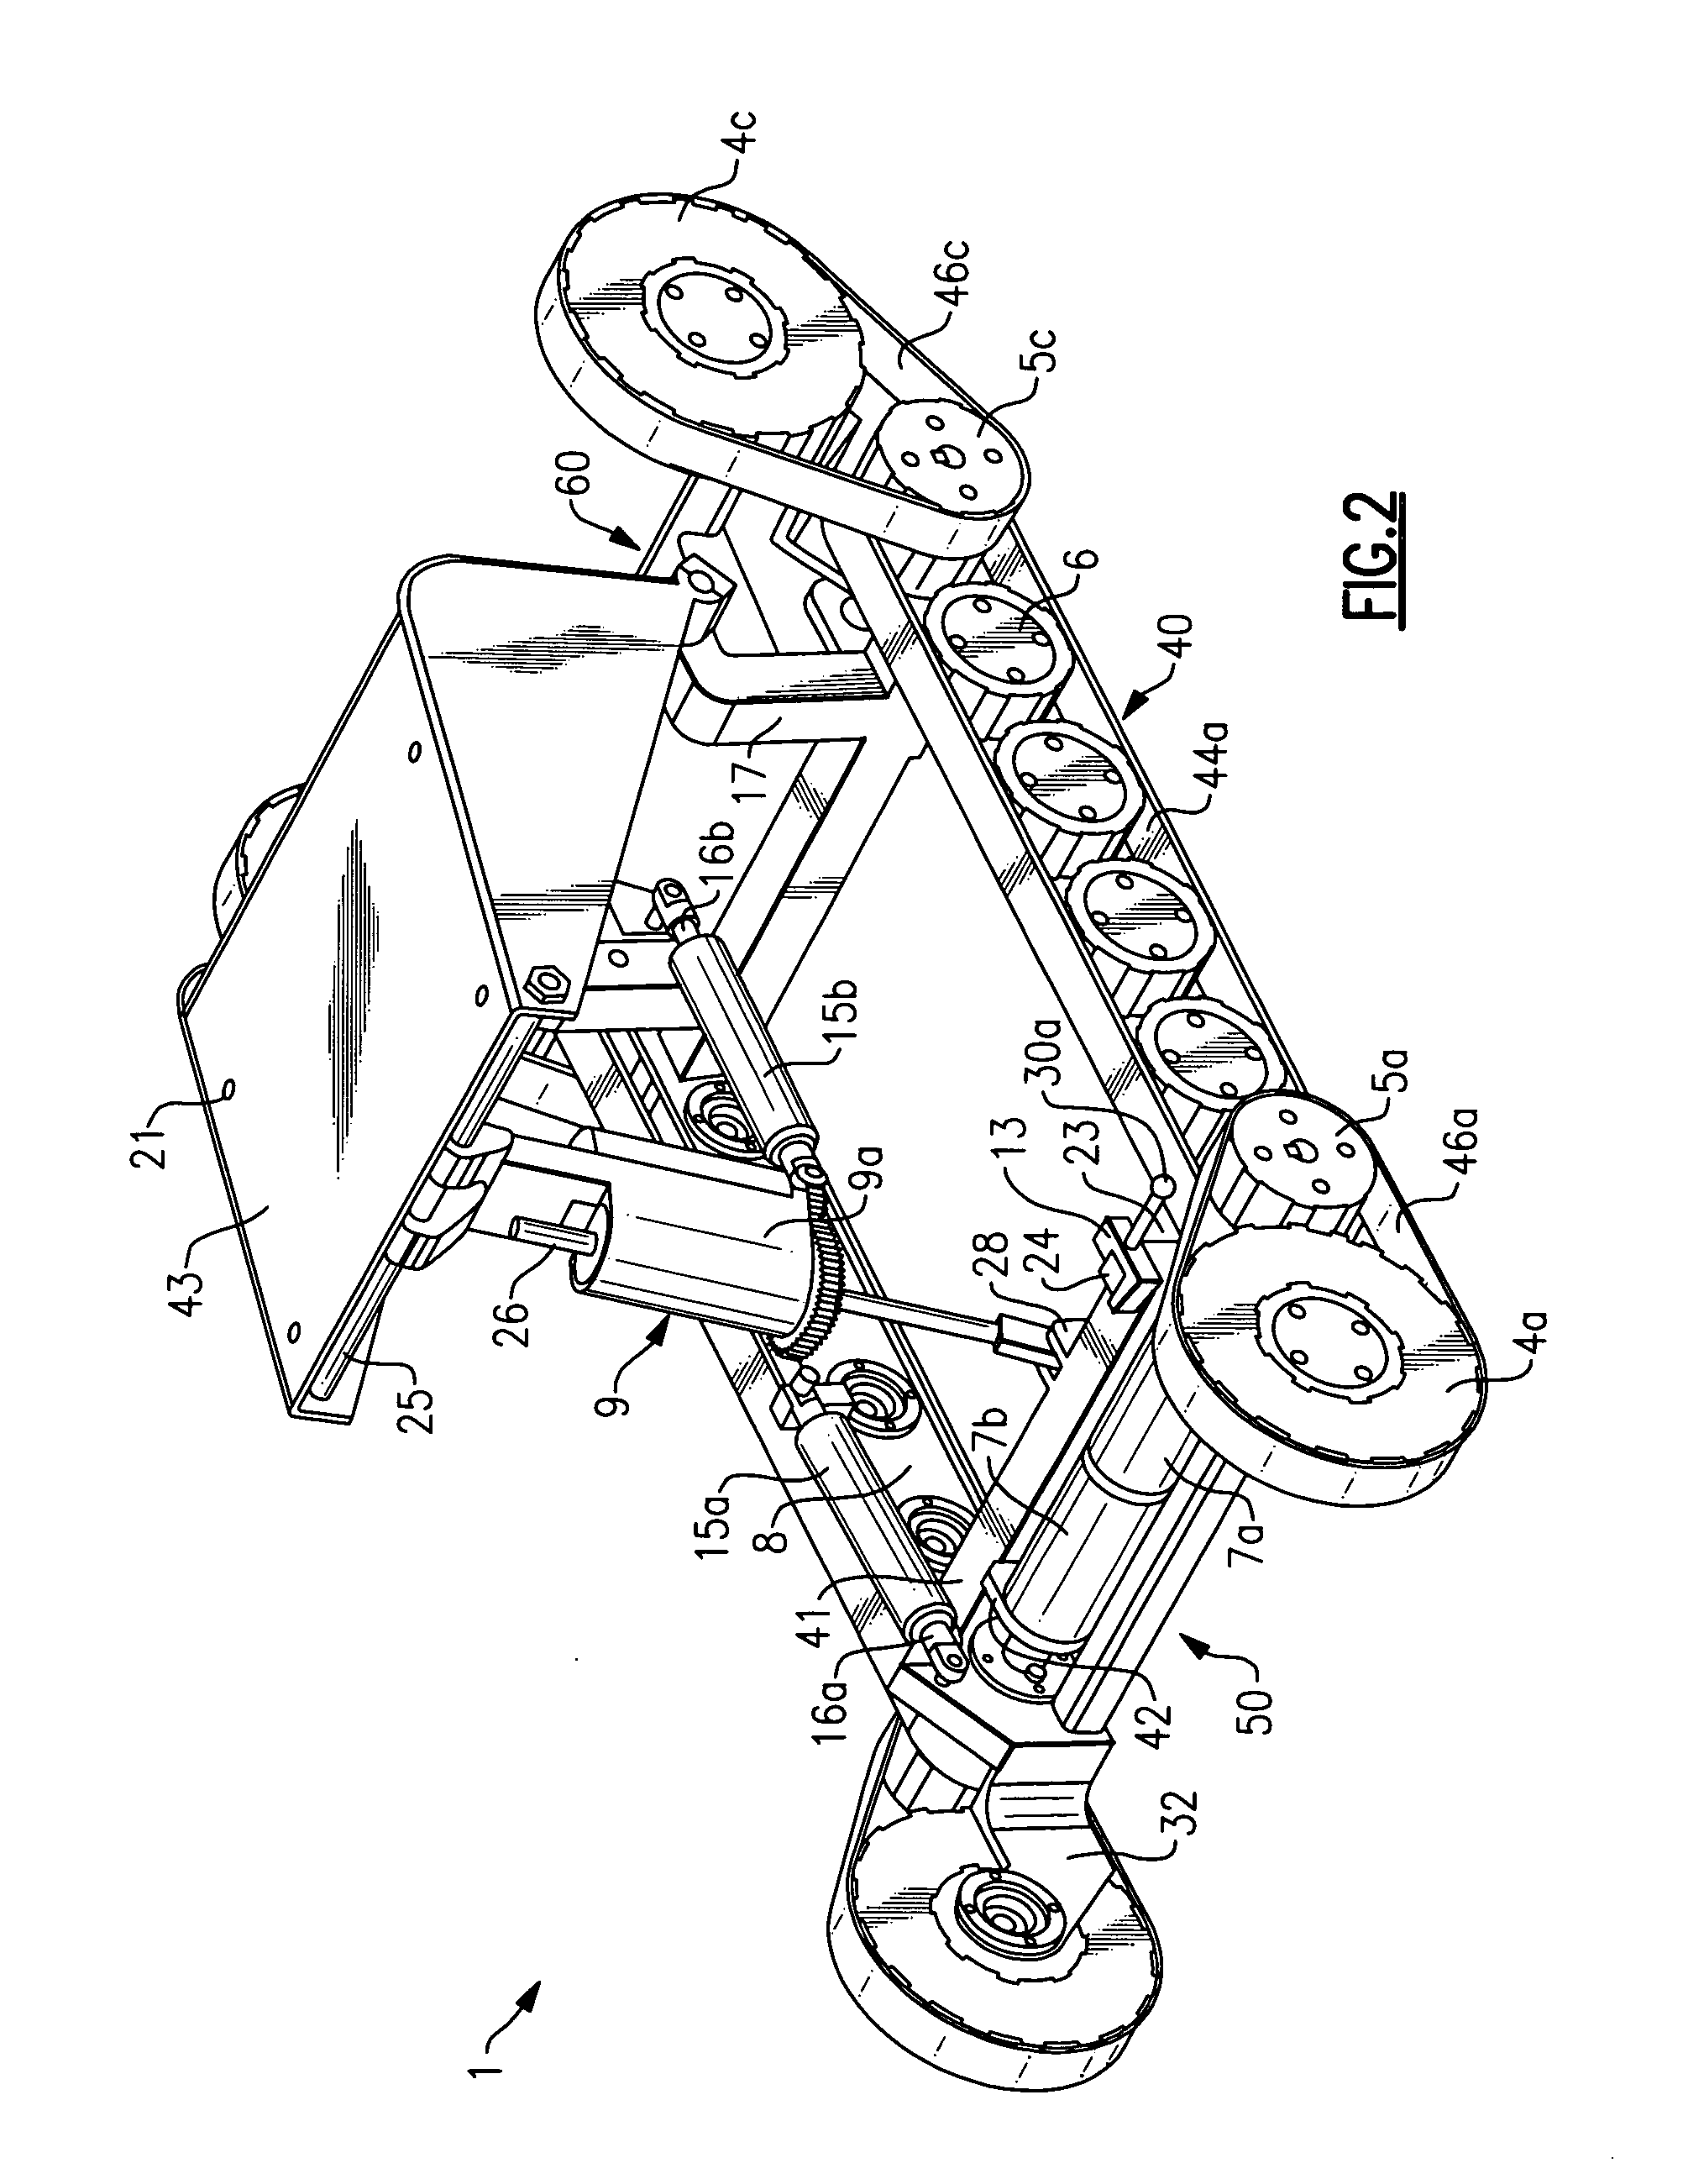 Stair-climbing apparatus